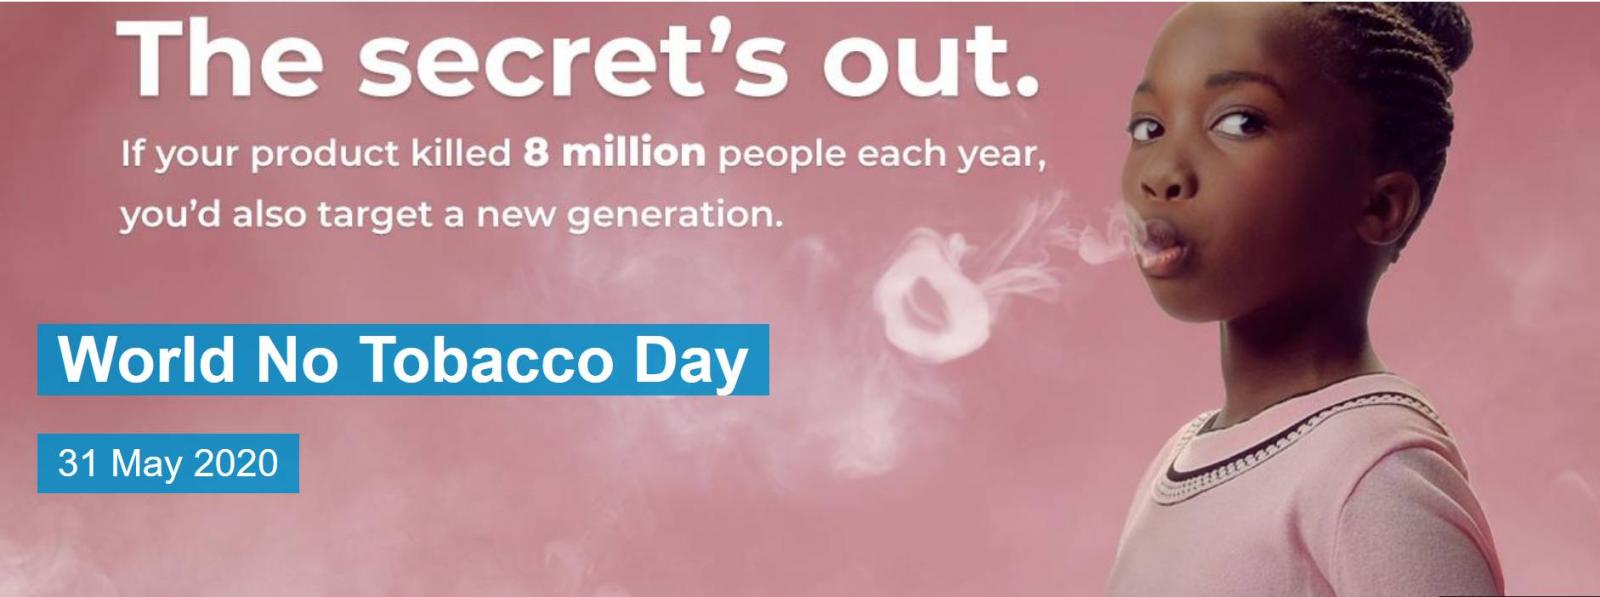 Η Παγκόσμια Ημέρα κατά του Καπνίσματος εστιάζει στην προστασία των νέων 